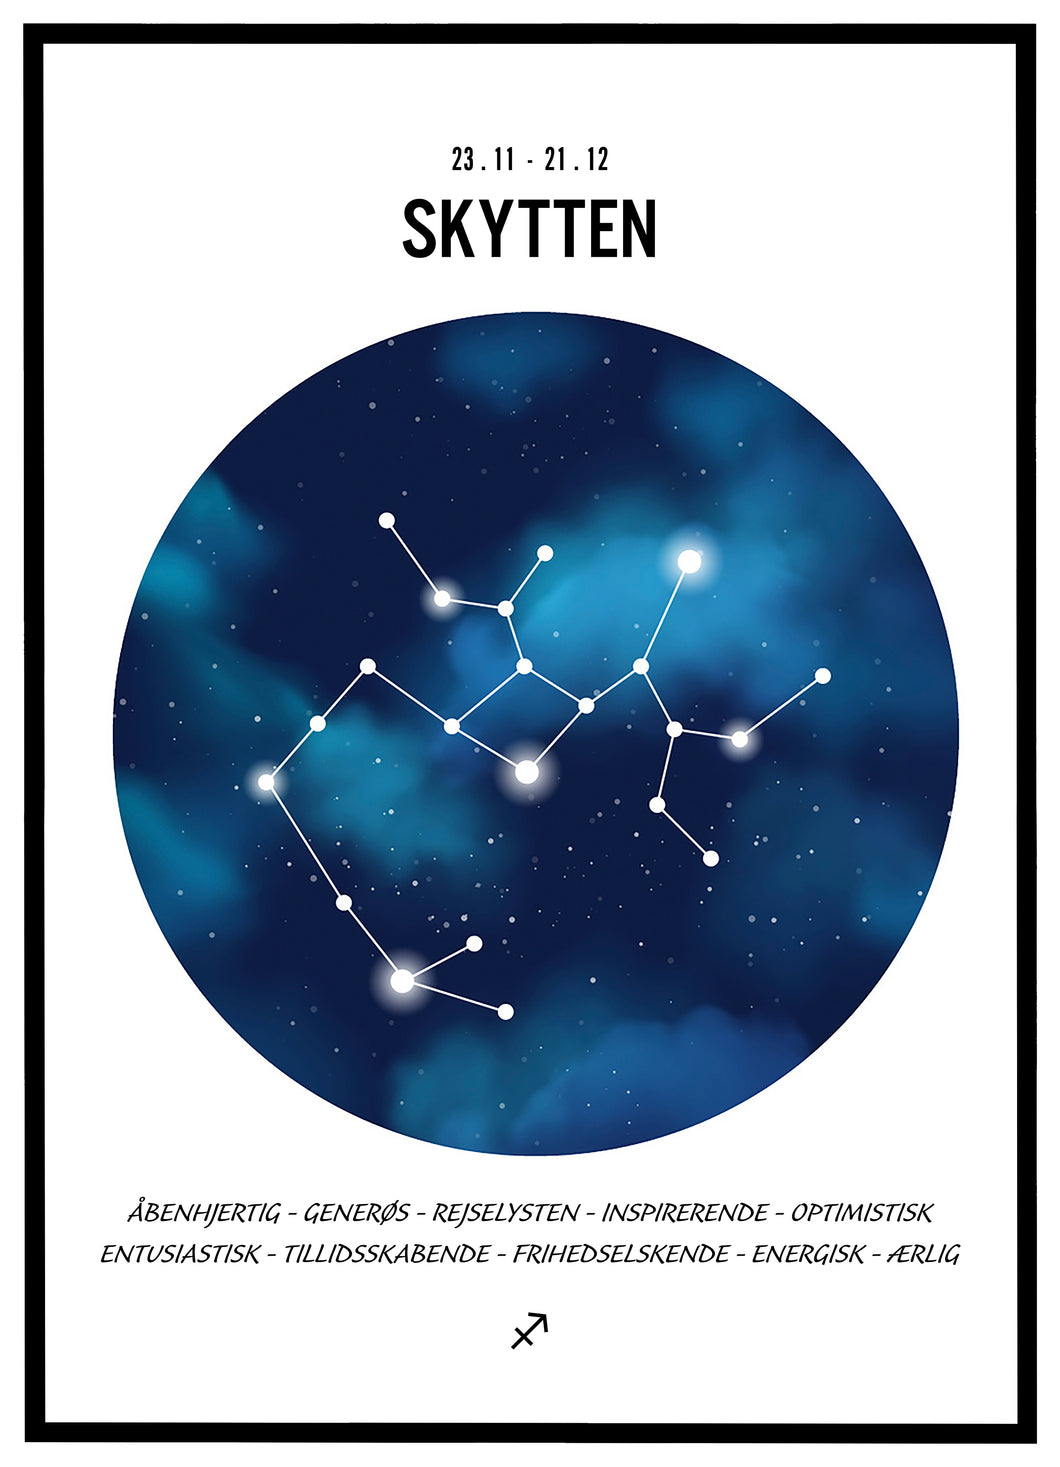 Stjernehimmel plakat - Skytten